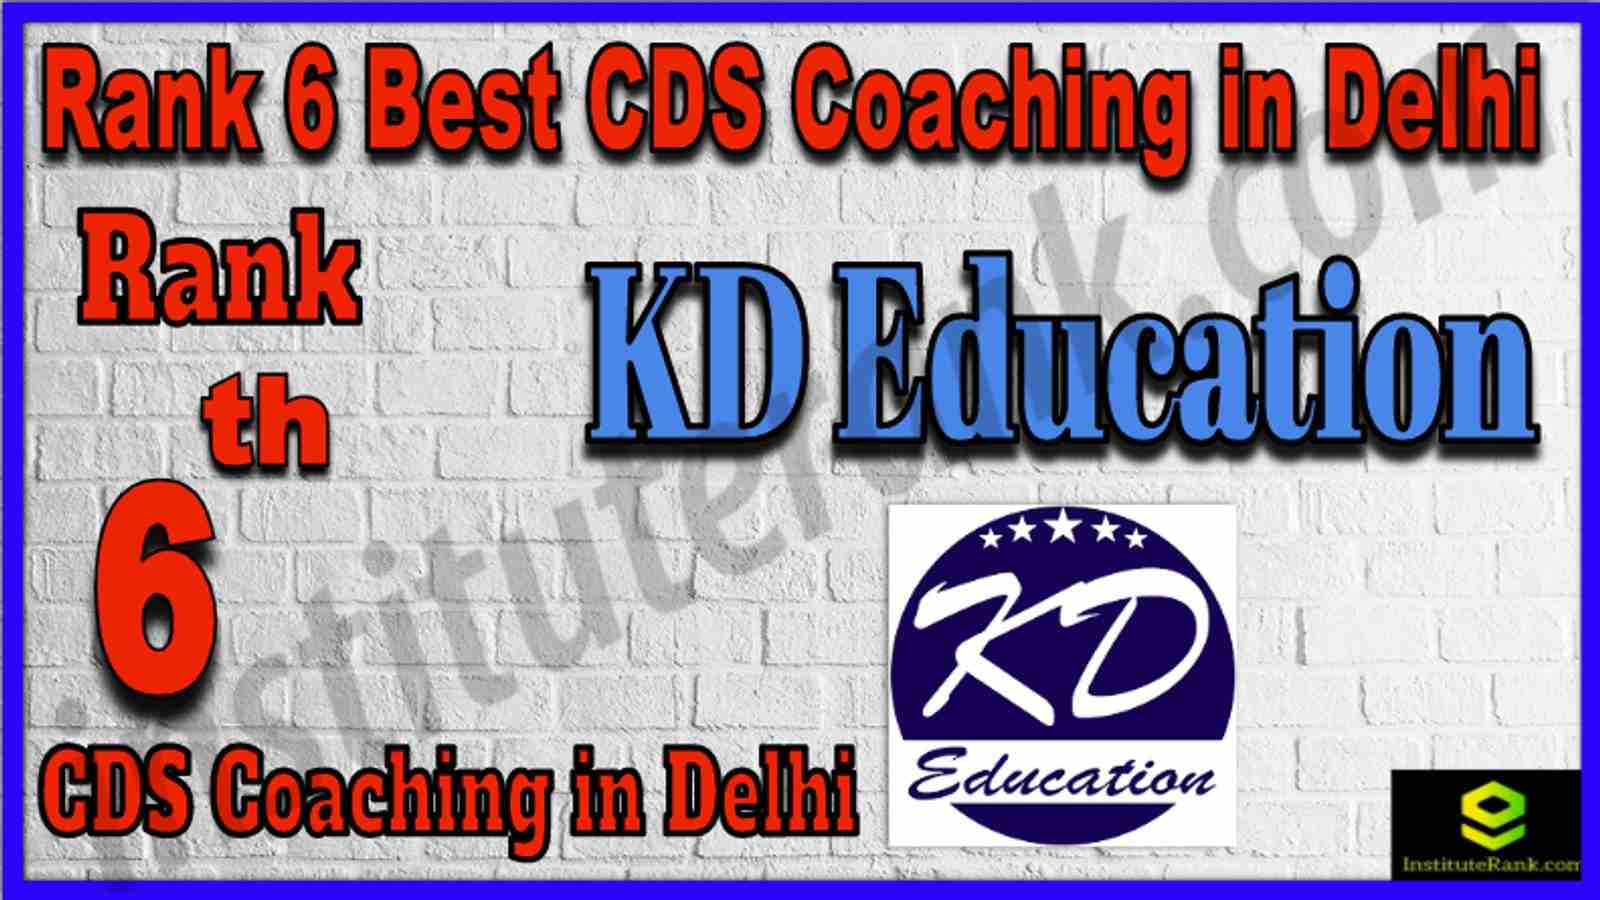 Rank 6 Best CDS Coaching in Delhi 2022